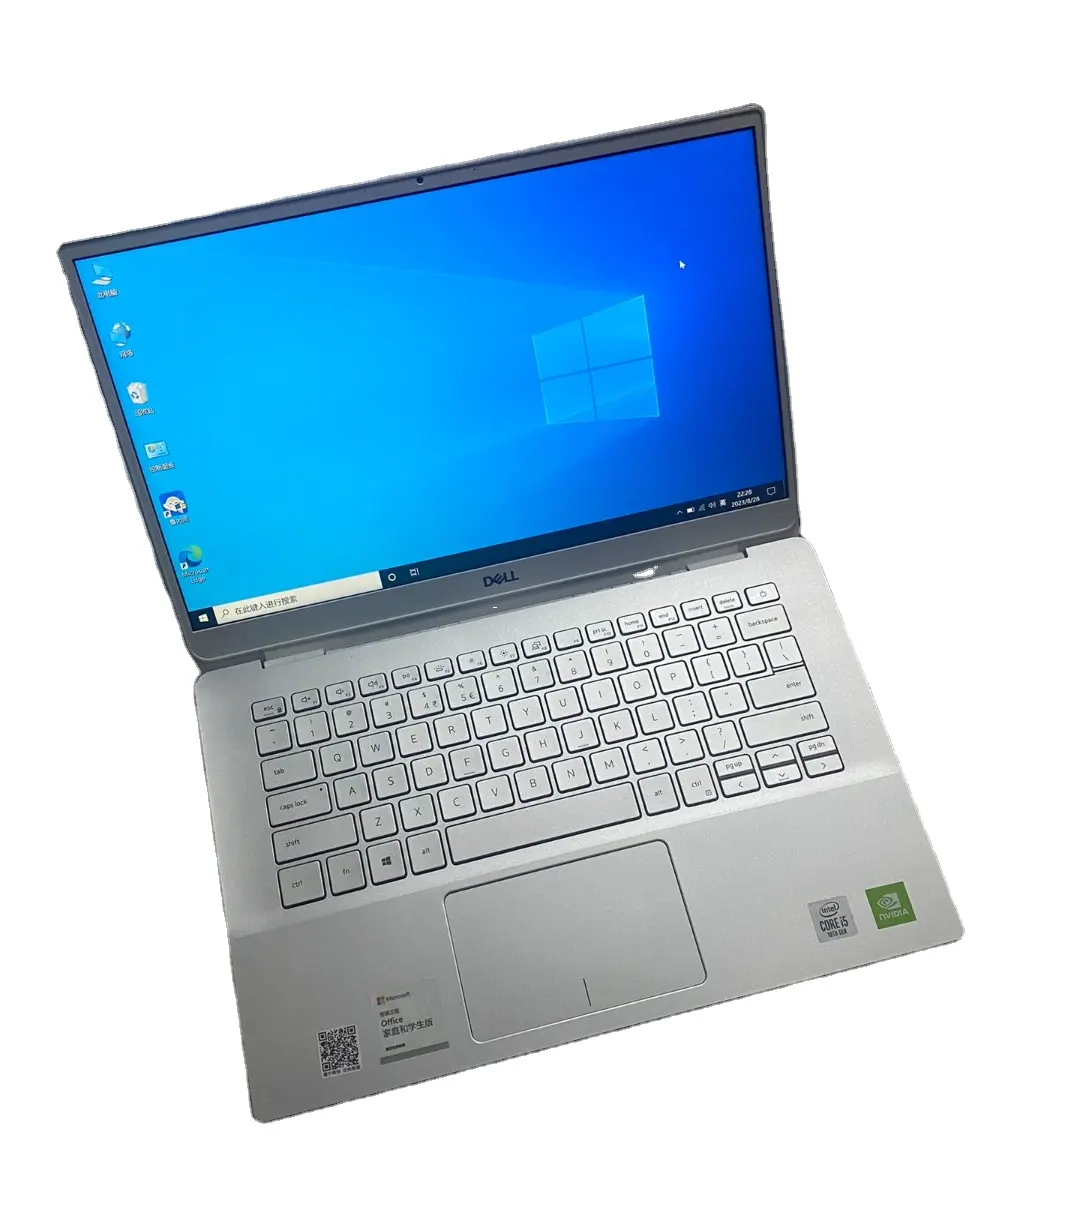 מקורי באיכות גבוהה עבור דל אינספירון 5490 Core I5 10th Gen Mx230 מחשב נייד משומש מחשב נייד יד שניה מחשבים עסקיים מחשבים ניידים